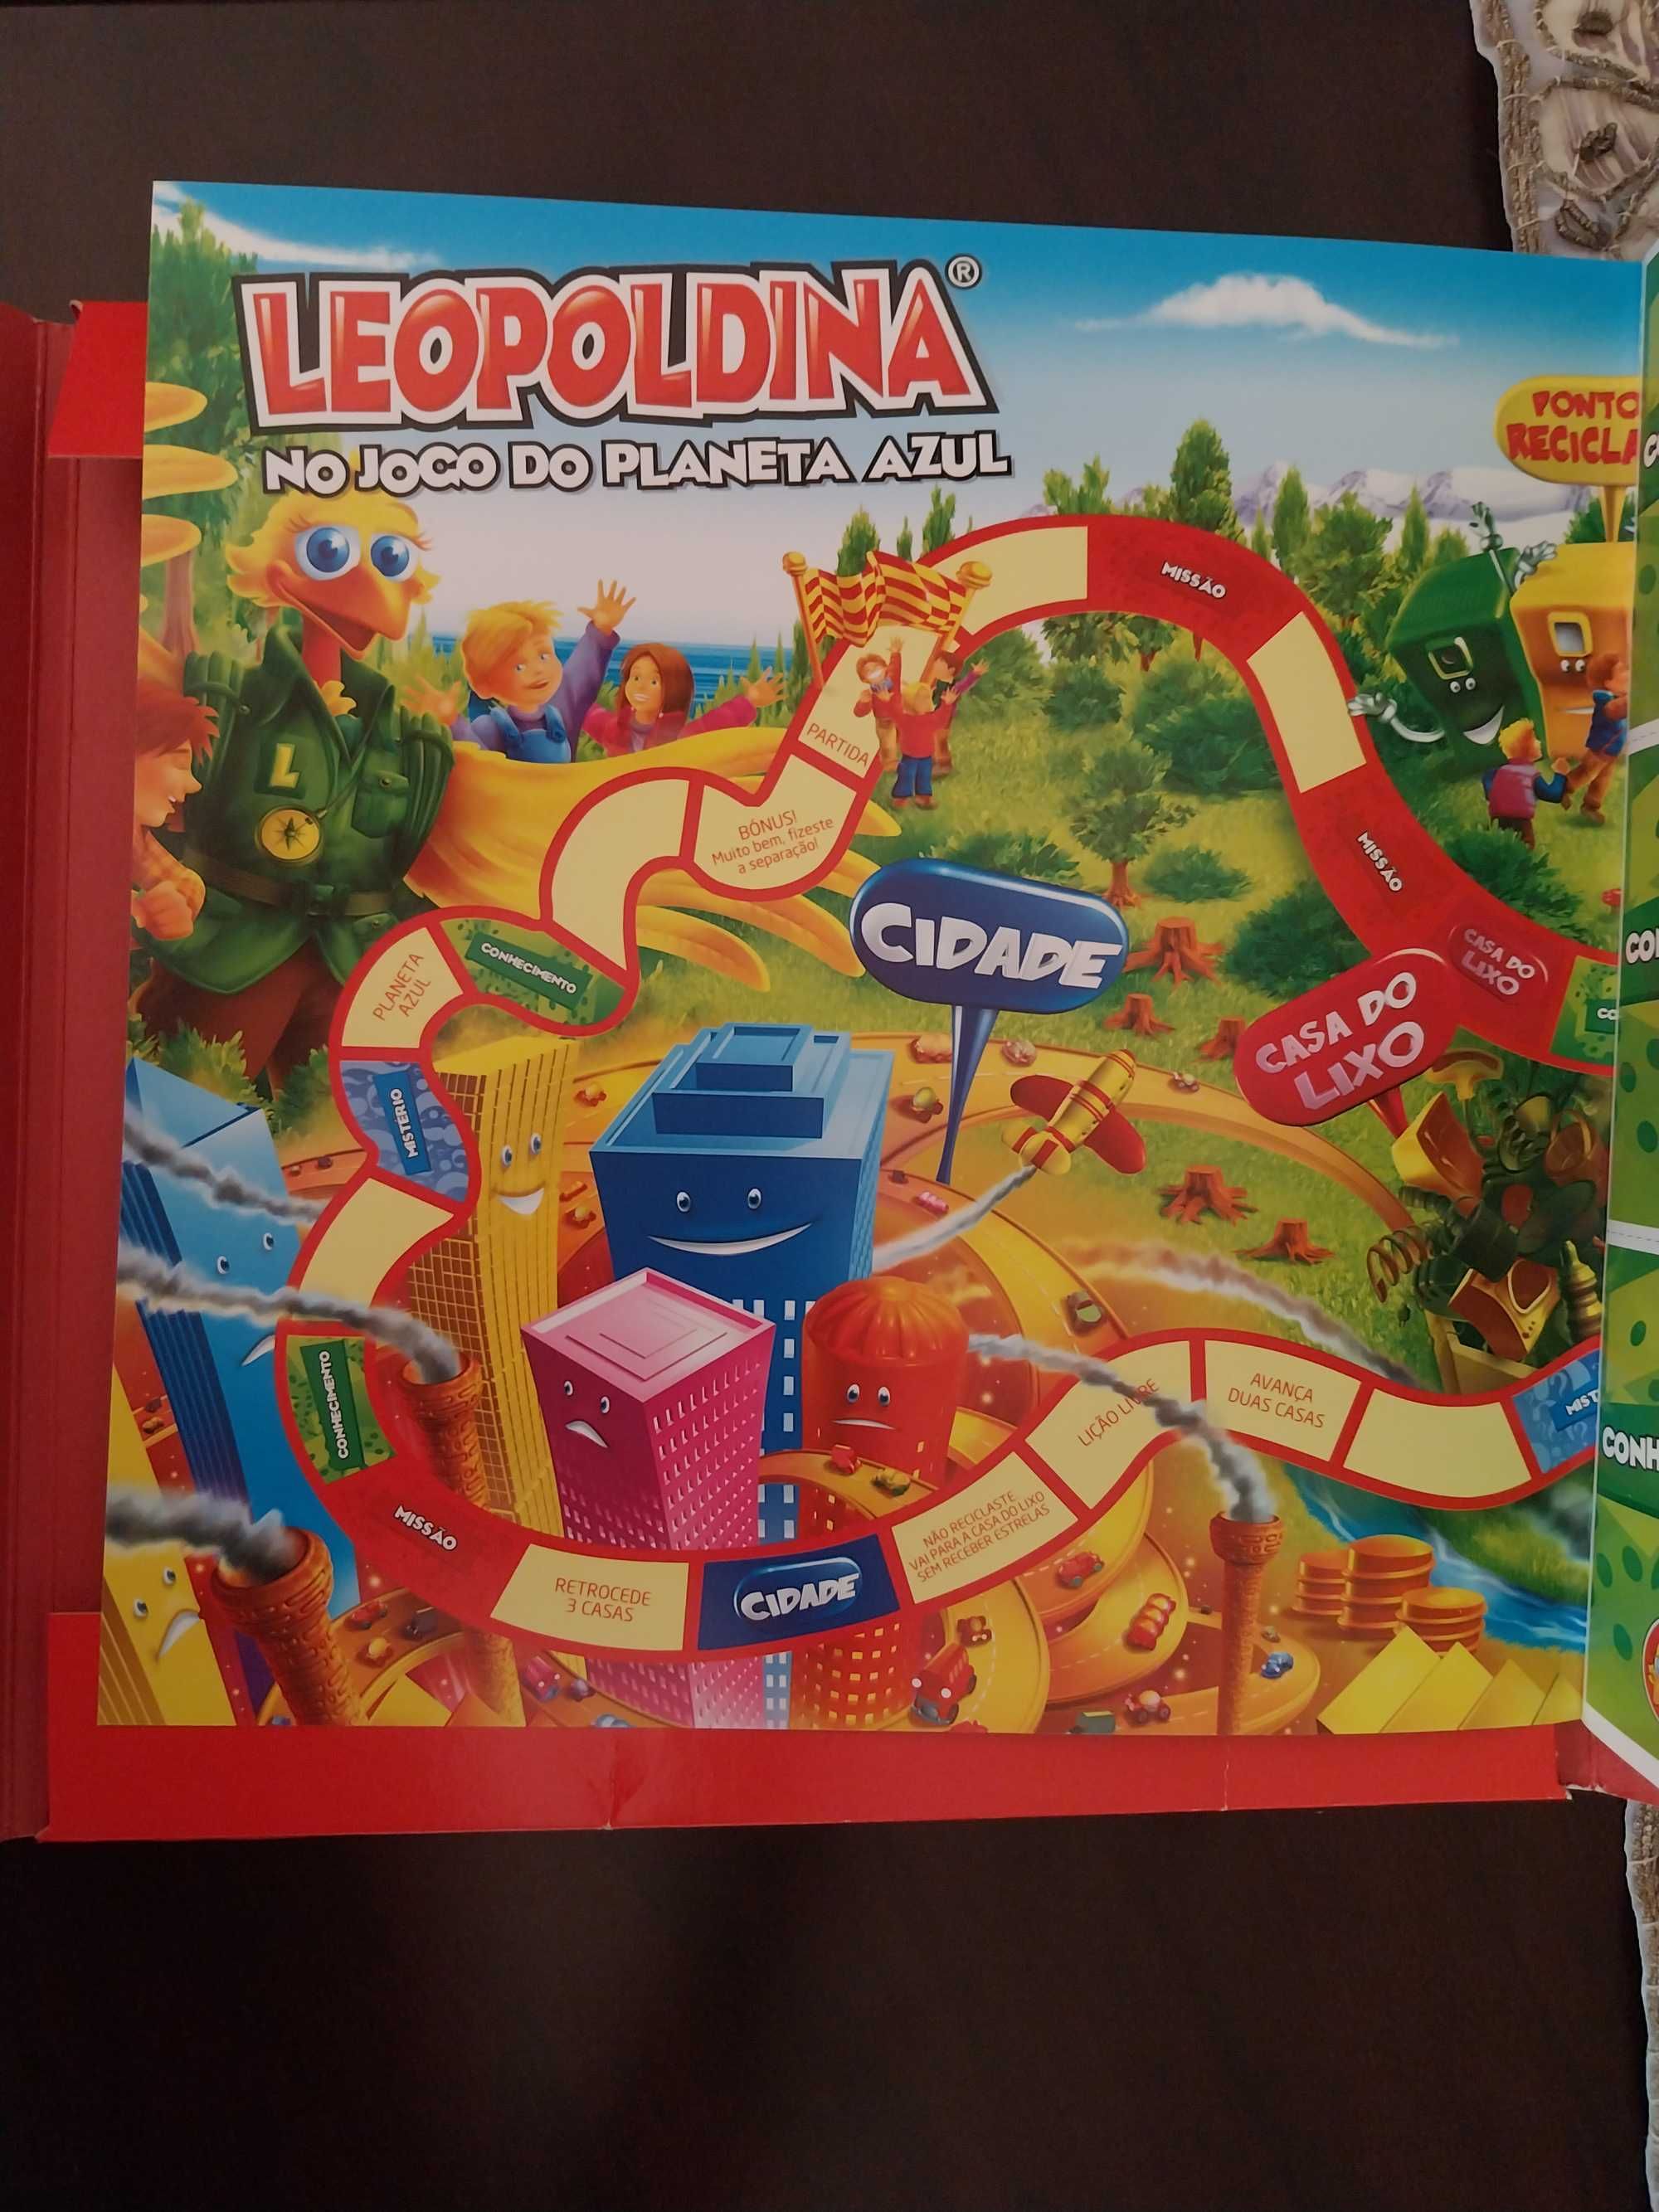 Leopoldina no Jogo do Planeta Azul - CD + jogo